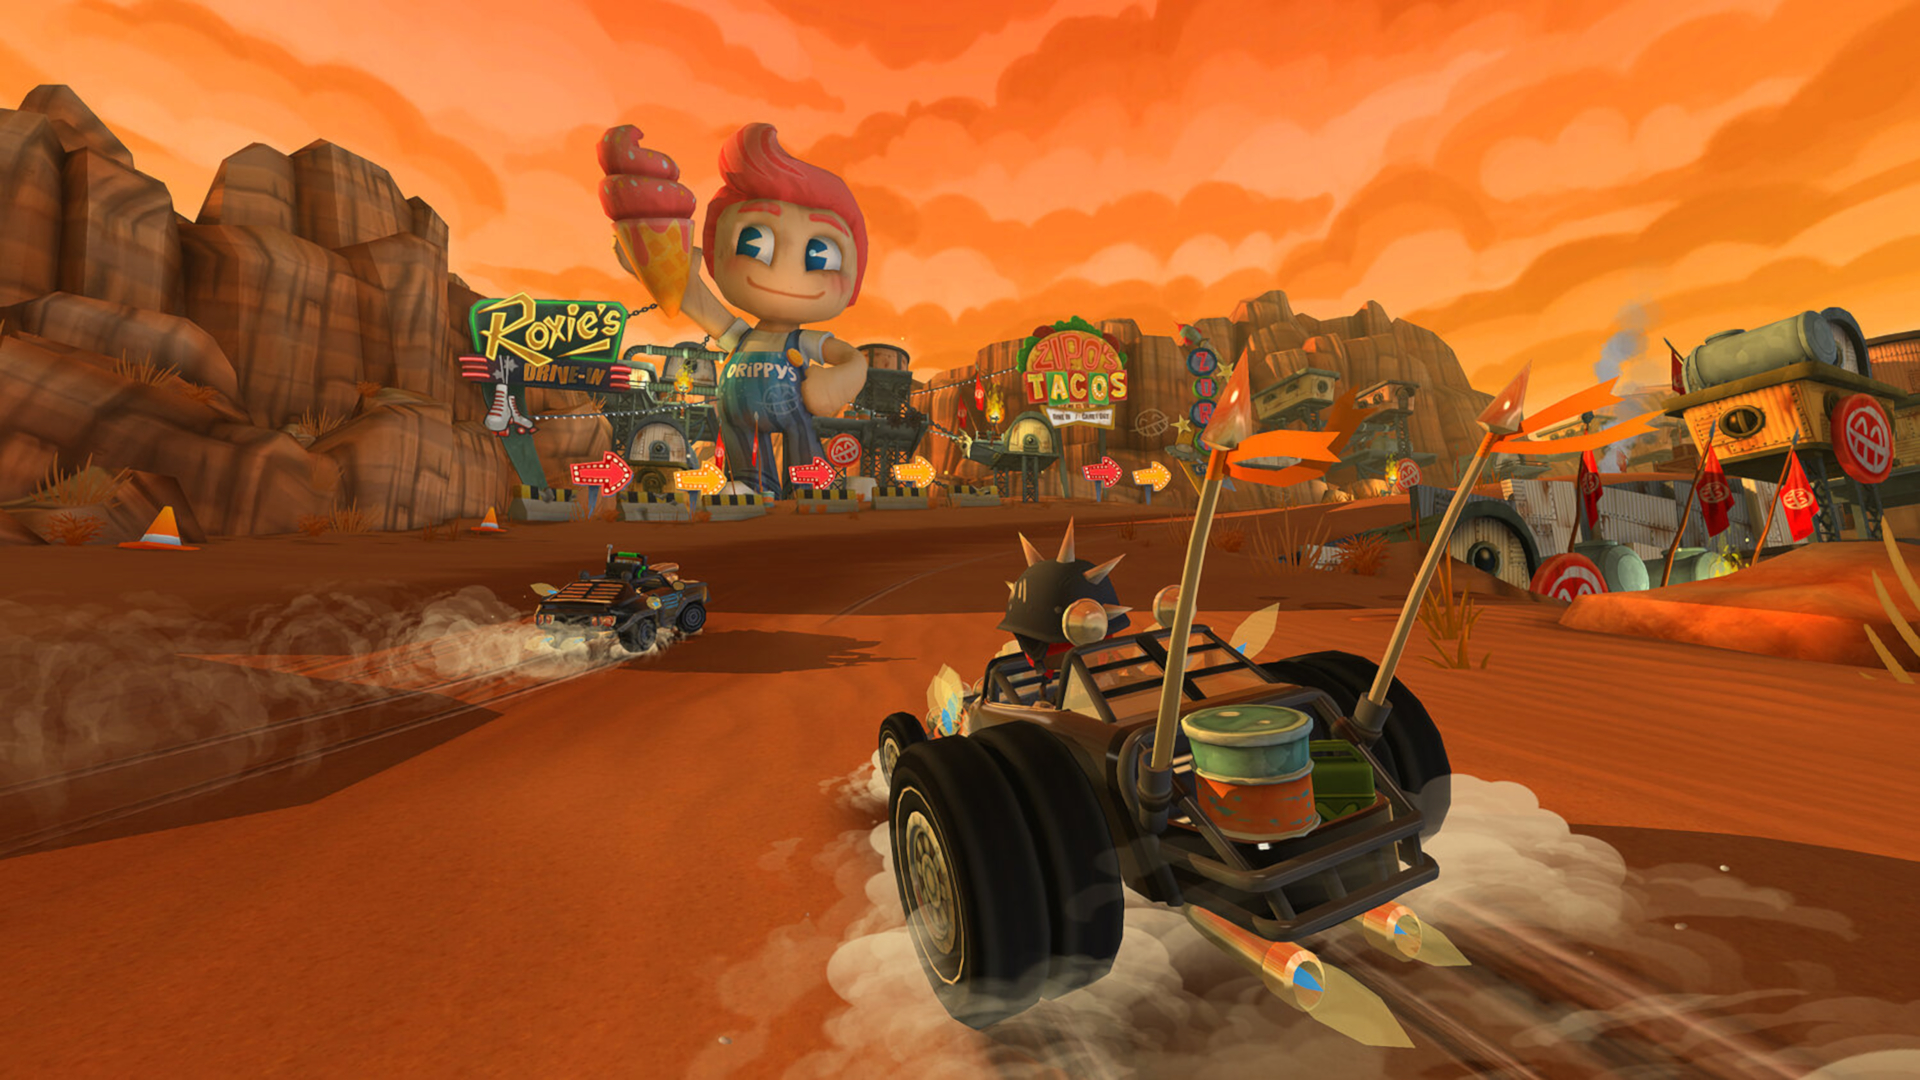 beach buggy racing 2 mod apk download